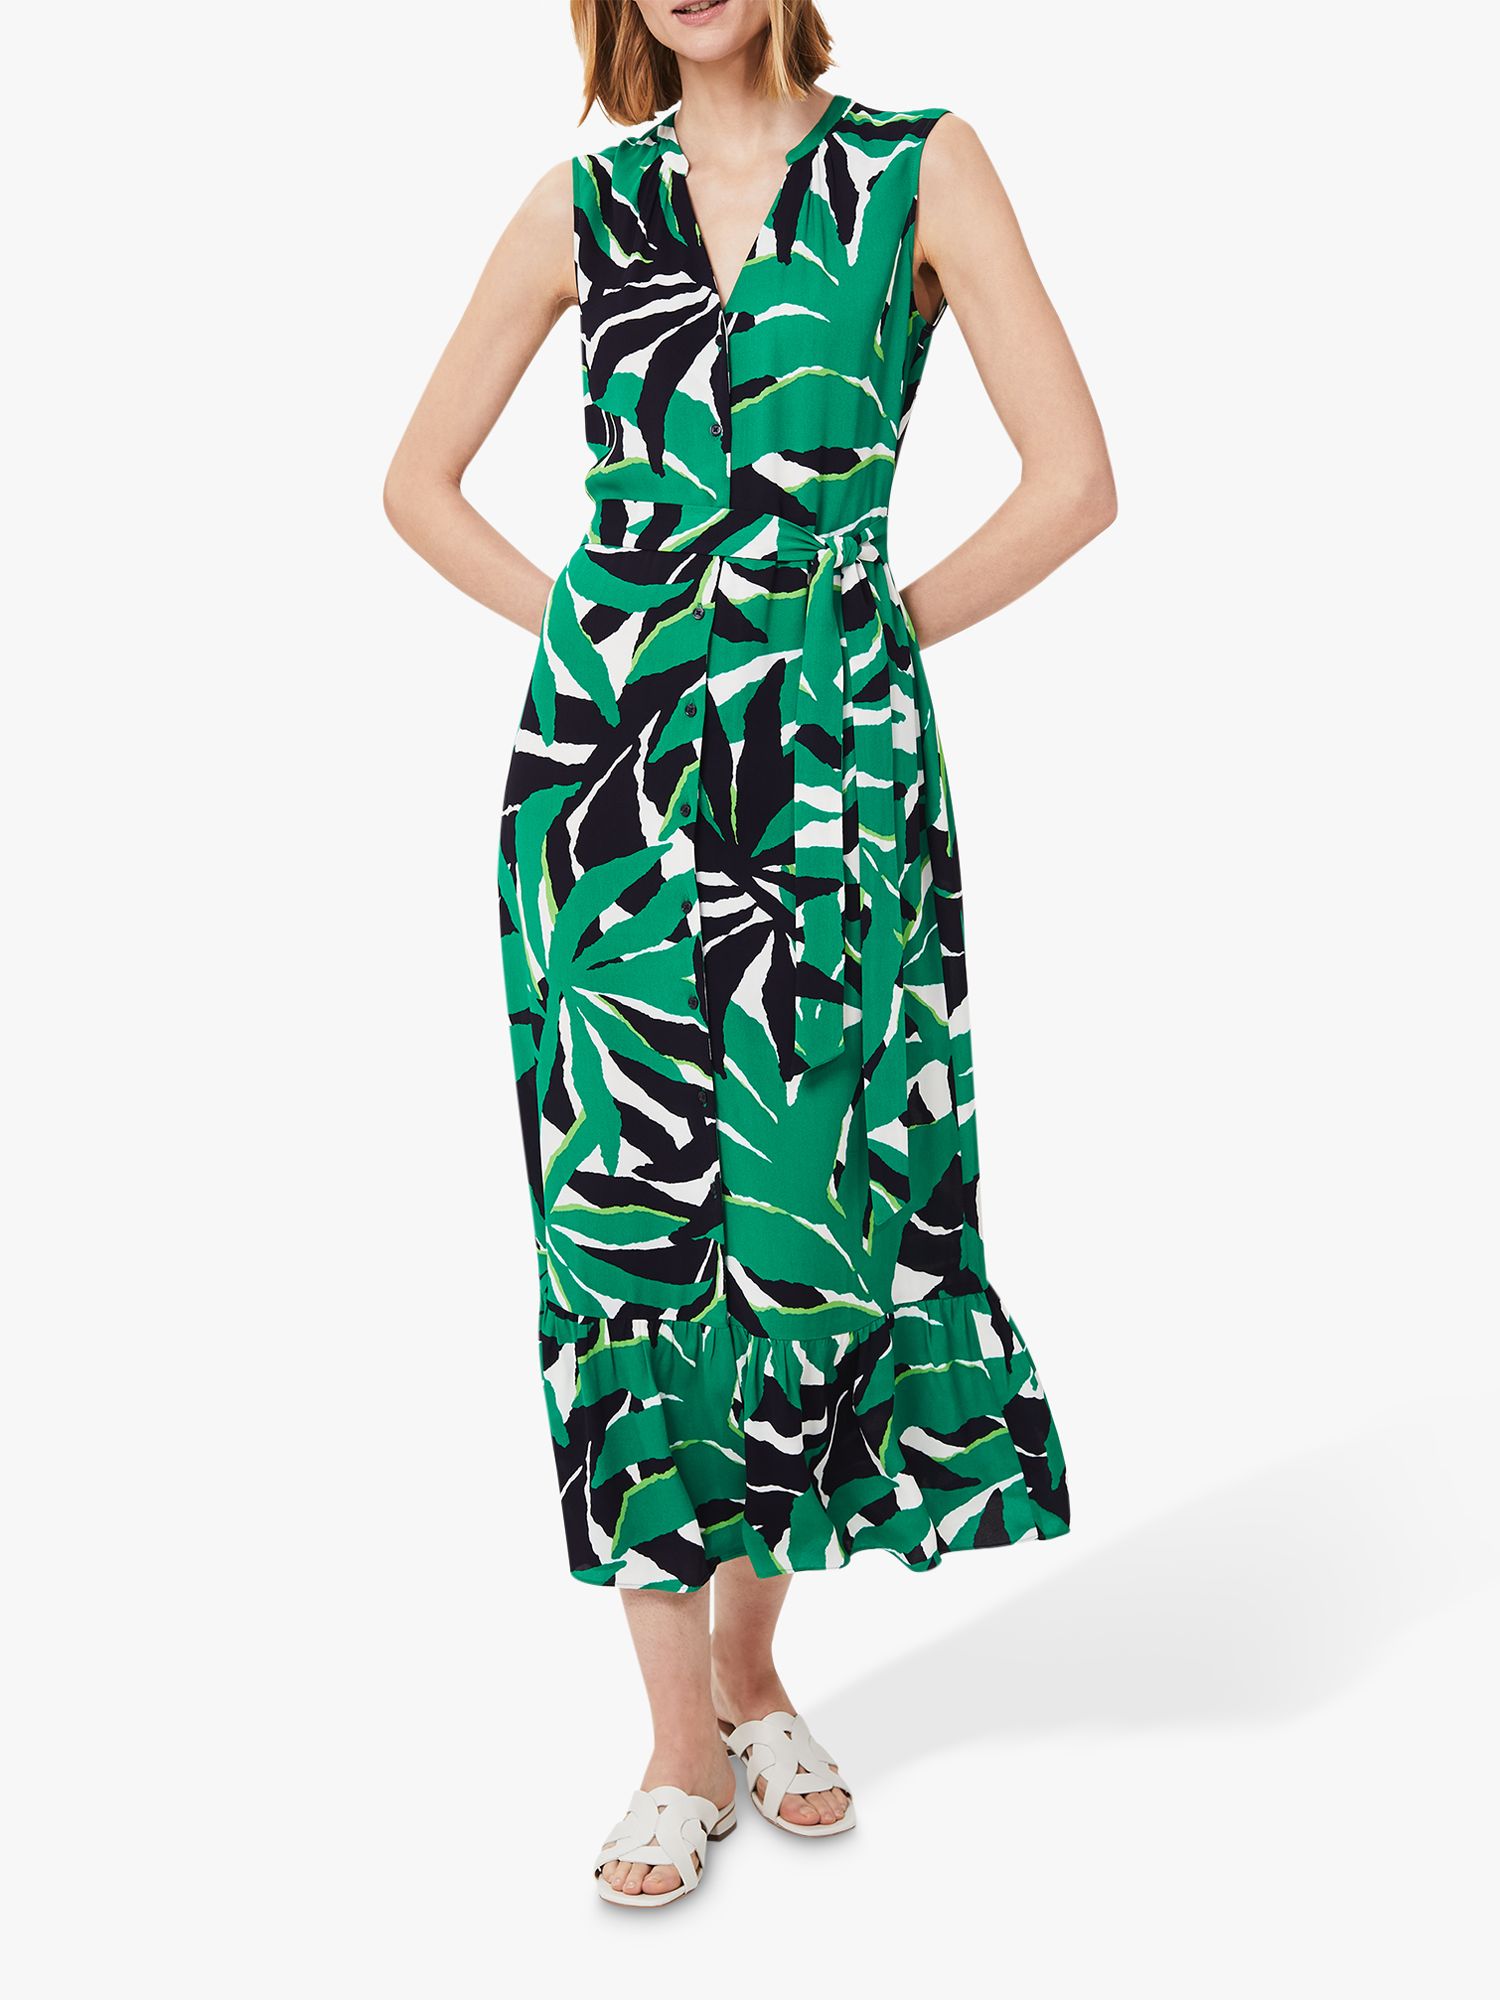 Hobbs Laurenza Floral Midi Dress, Green/Multi at John Lewis & Partners